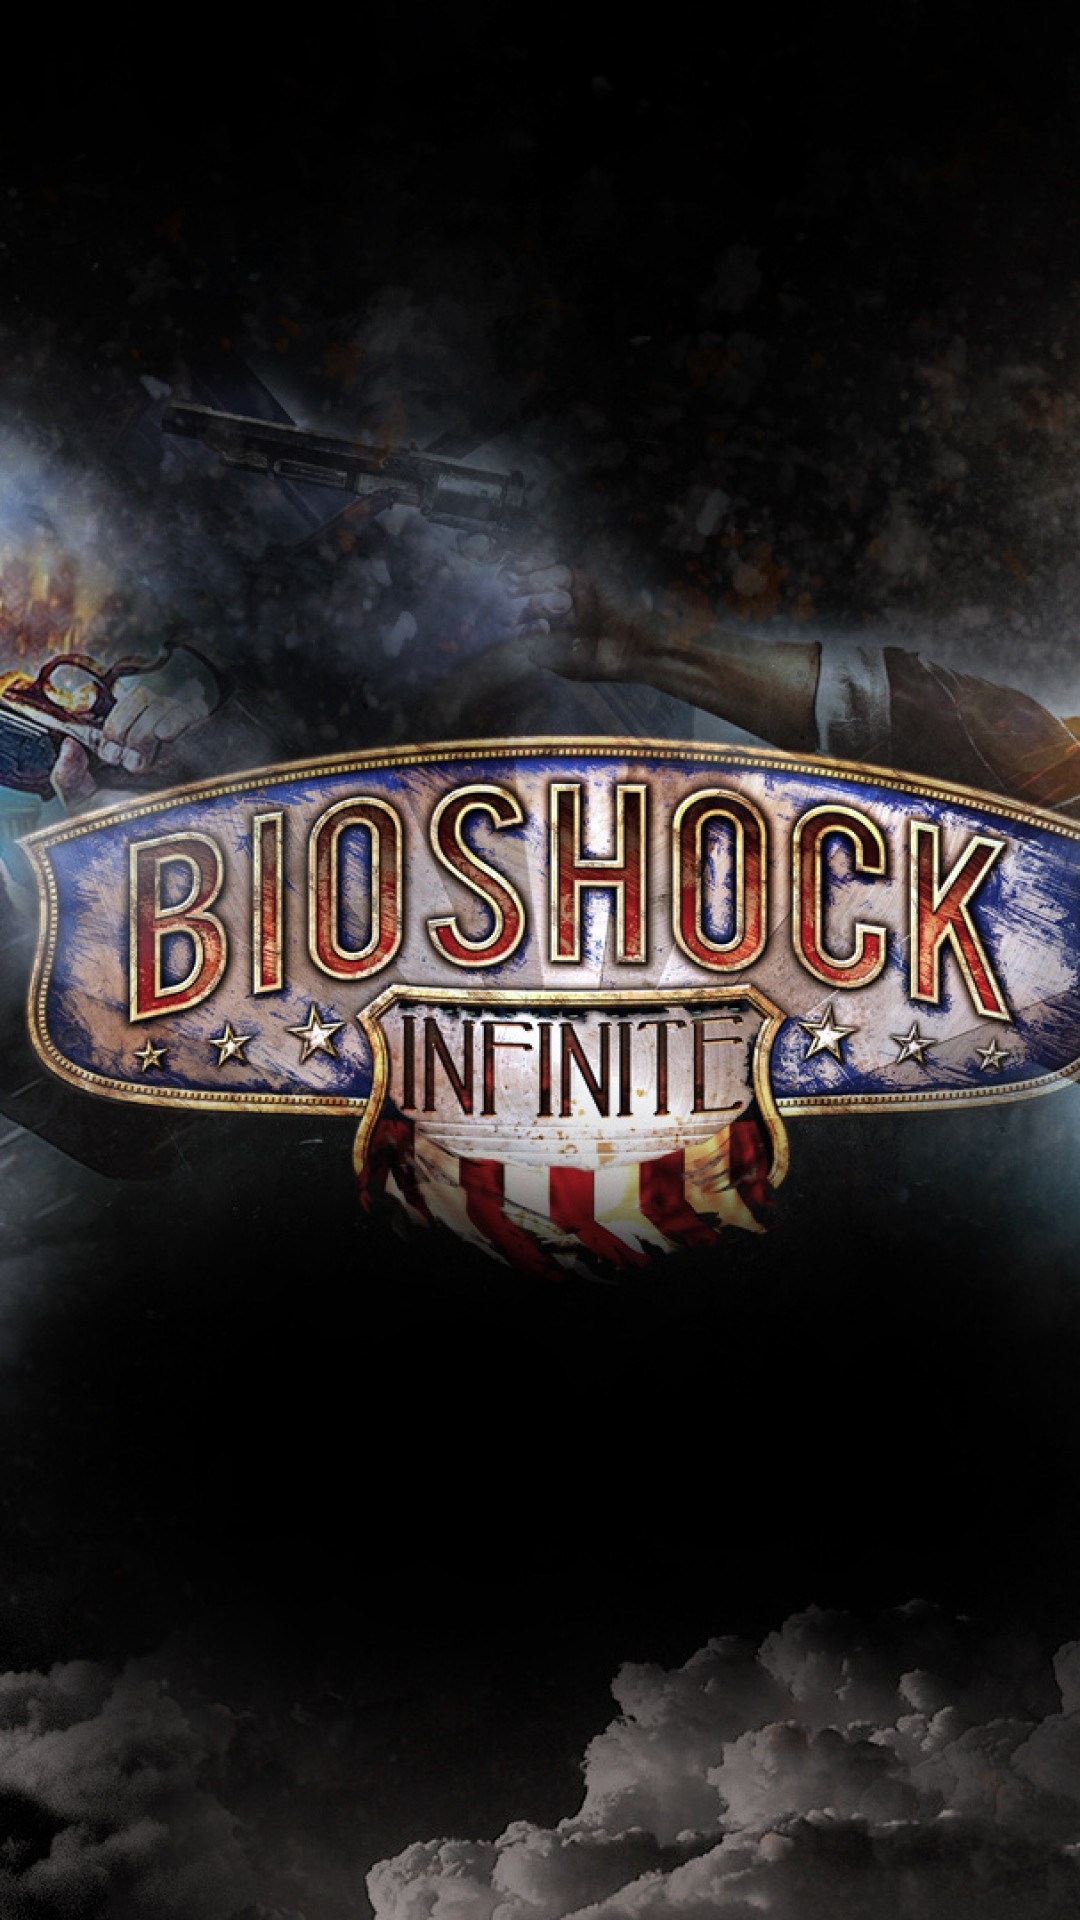 1080x1920 HD Bioshock Infinite iPhone Wallpaper | PixelsTalk.Net